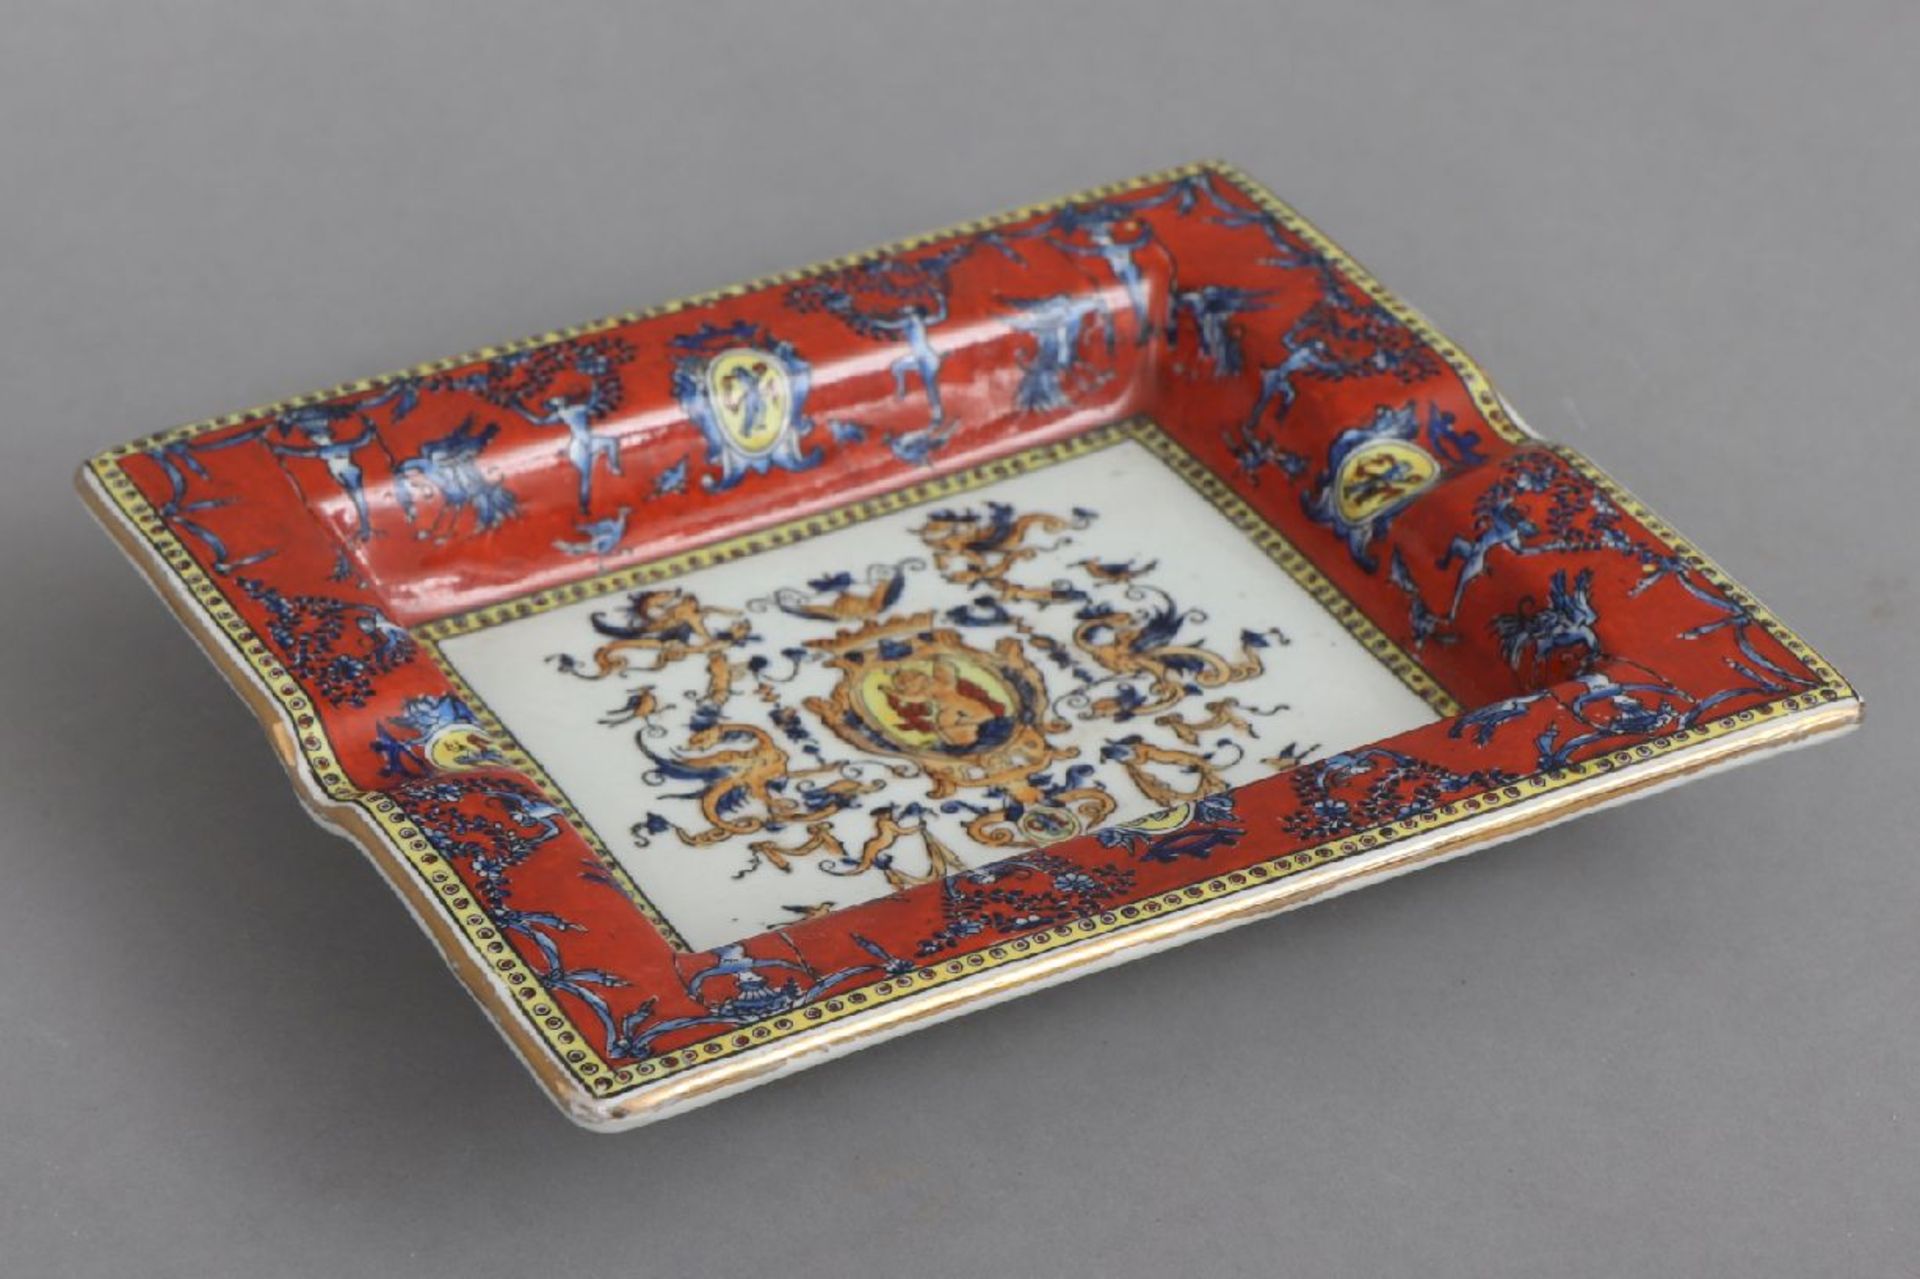 Porzellan Tischascher im Stile Hermèshistorisierendes Druckdekor mit karminrotem Fond, am Boden